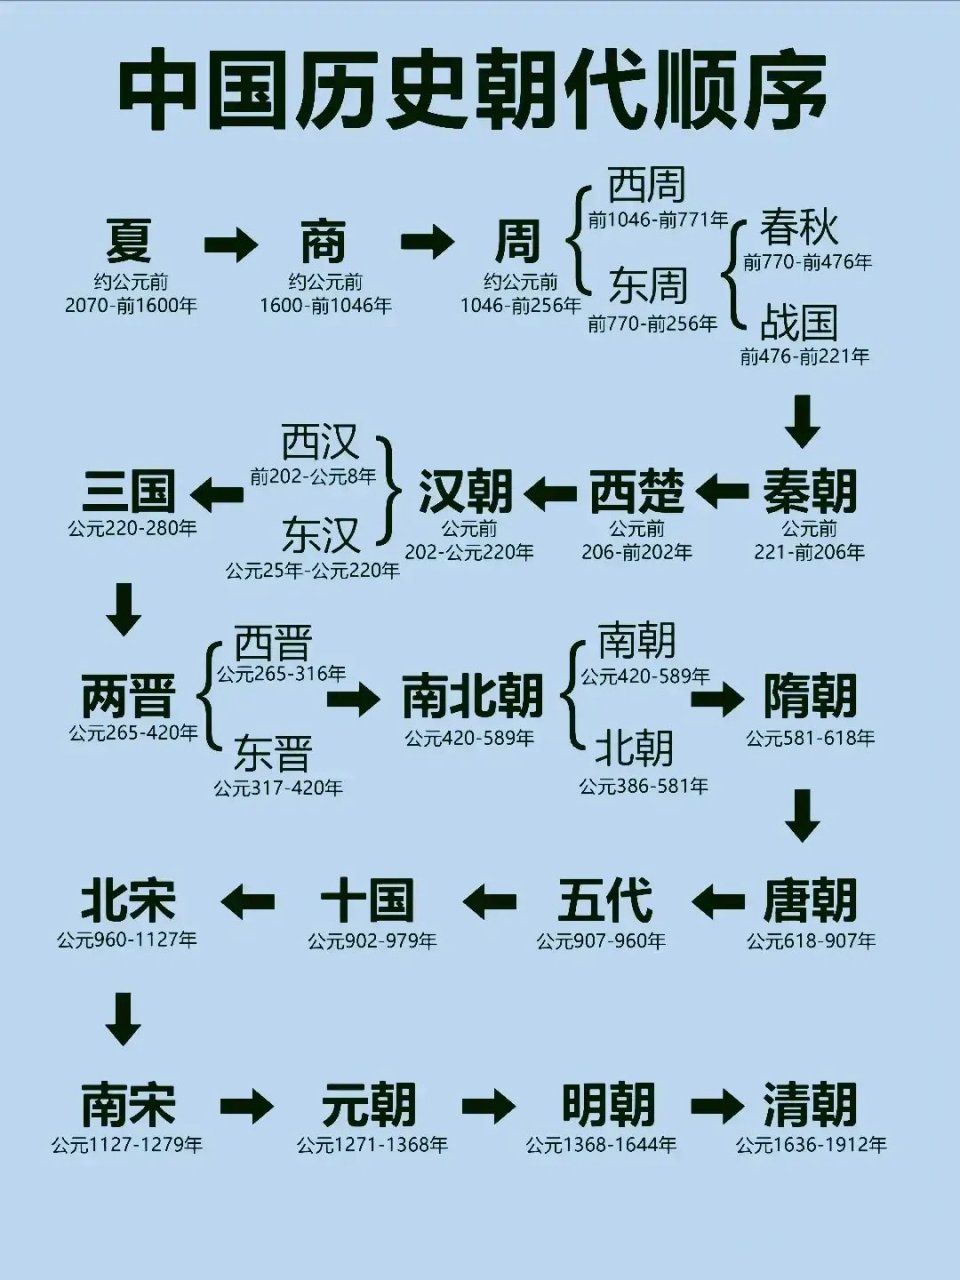 中国历史朝代顺序,太直观了,家长替孩子保存下来,多学点常识出门不